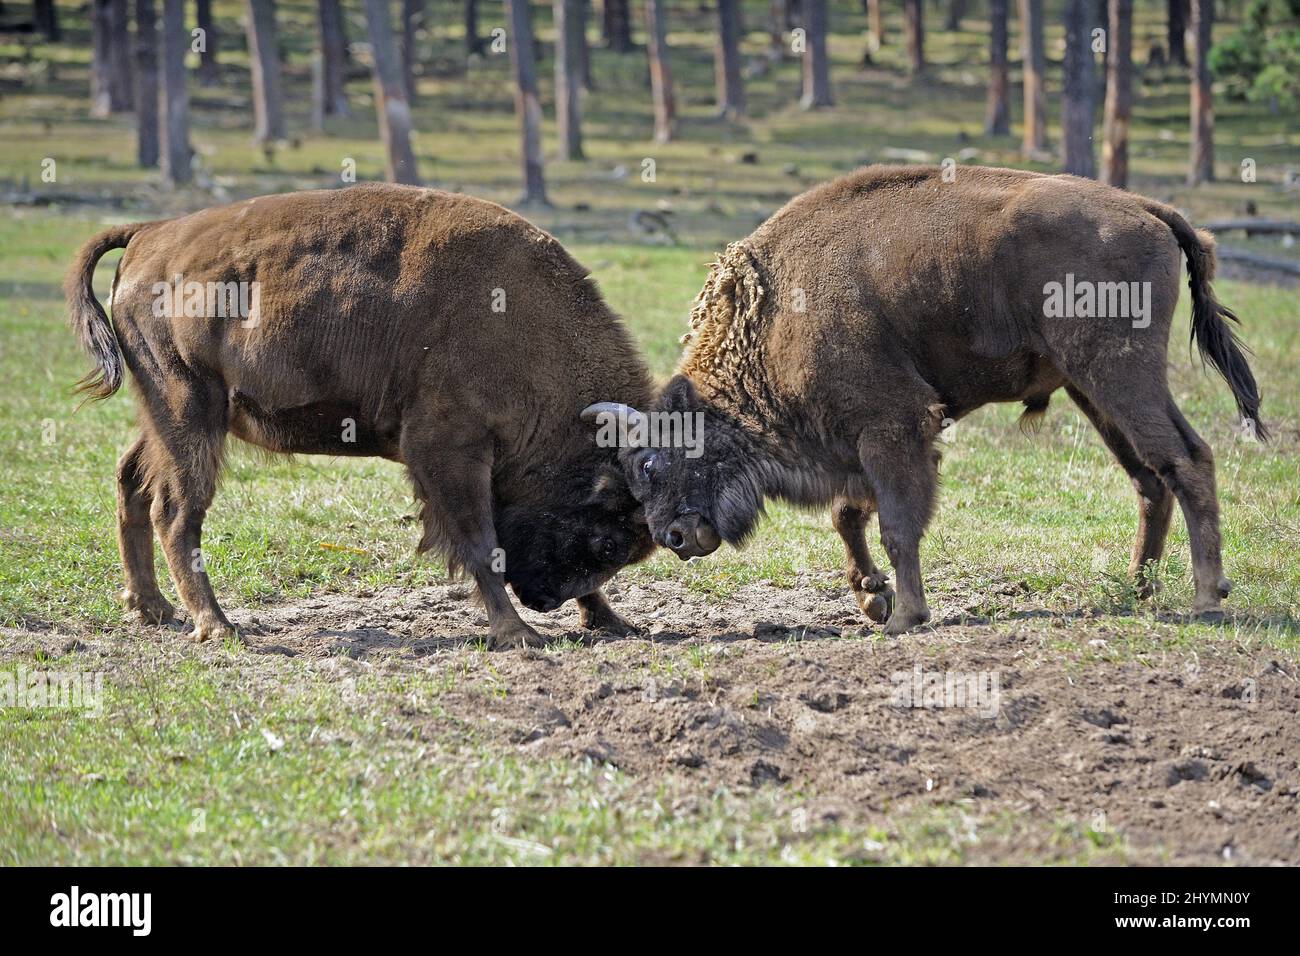 Bisonte europeo, wisent (Bison bonasus), dos bisontes europeos luchando, Alemania Foto de stock